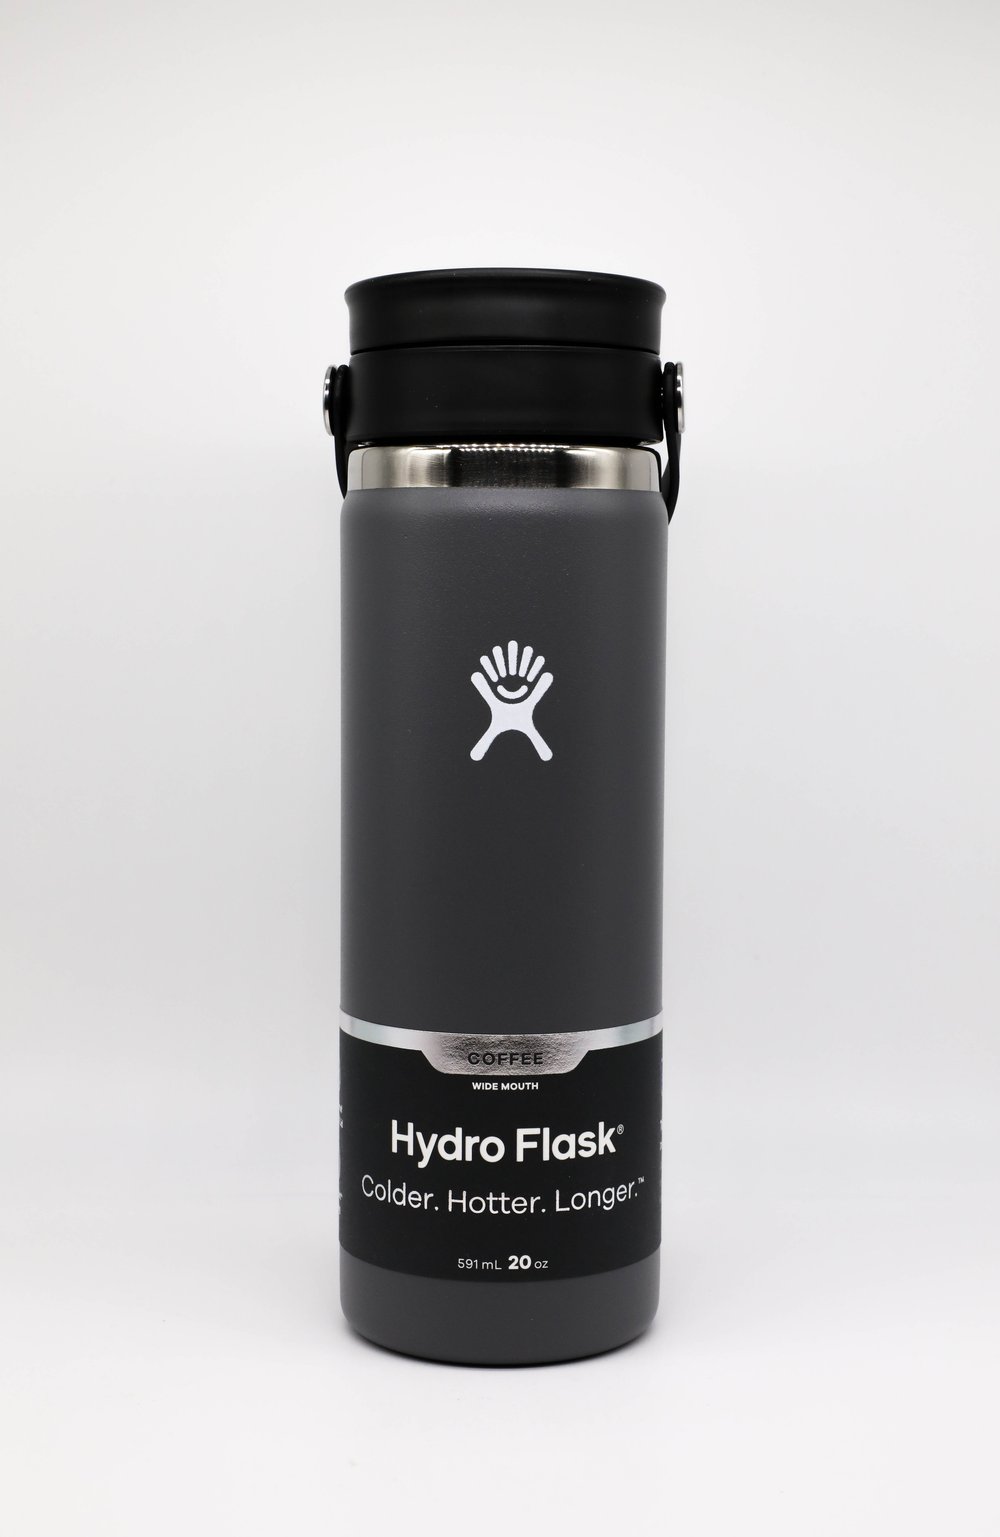 Hydro Flask Wide Mouth Bottle Flex Sip Lid 20oz